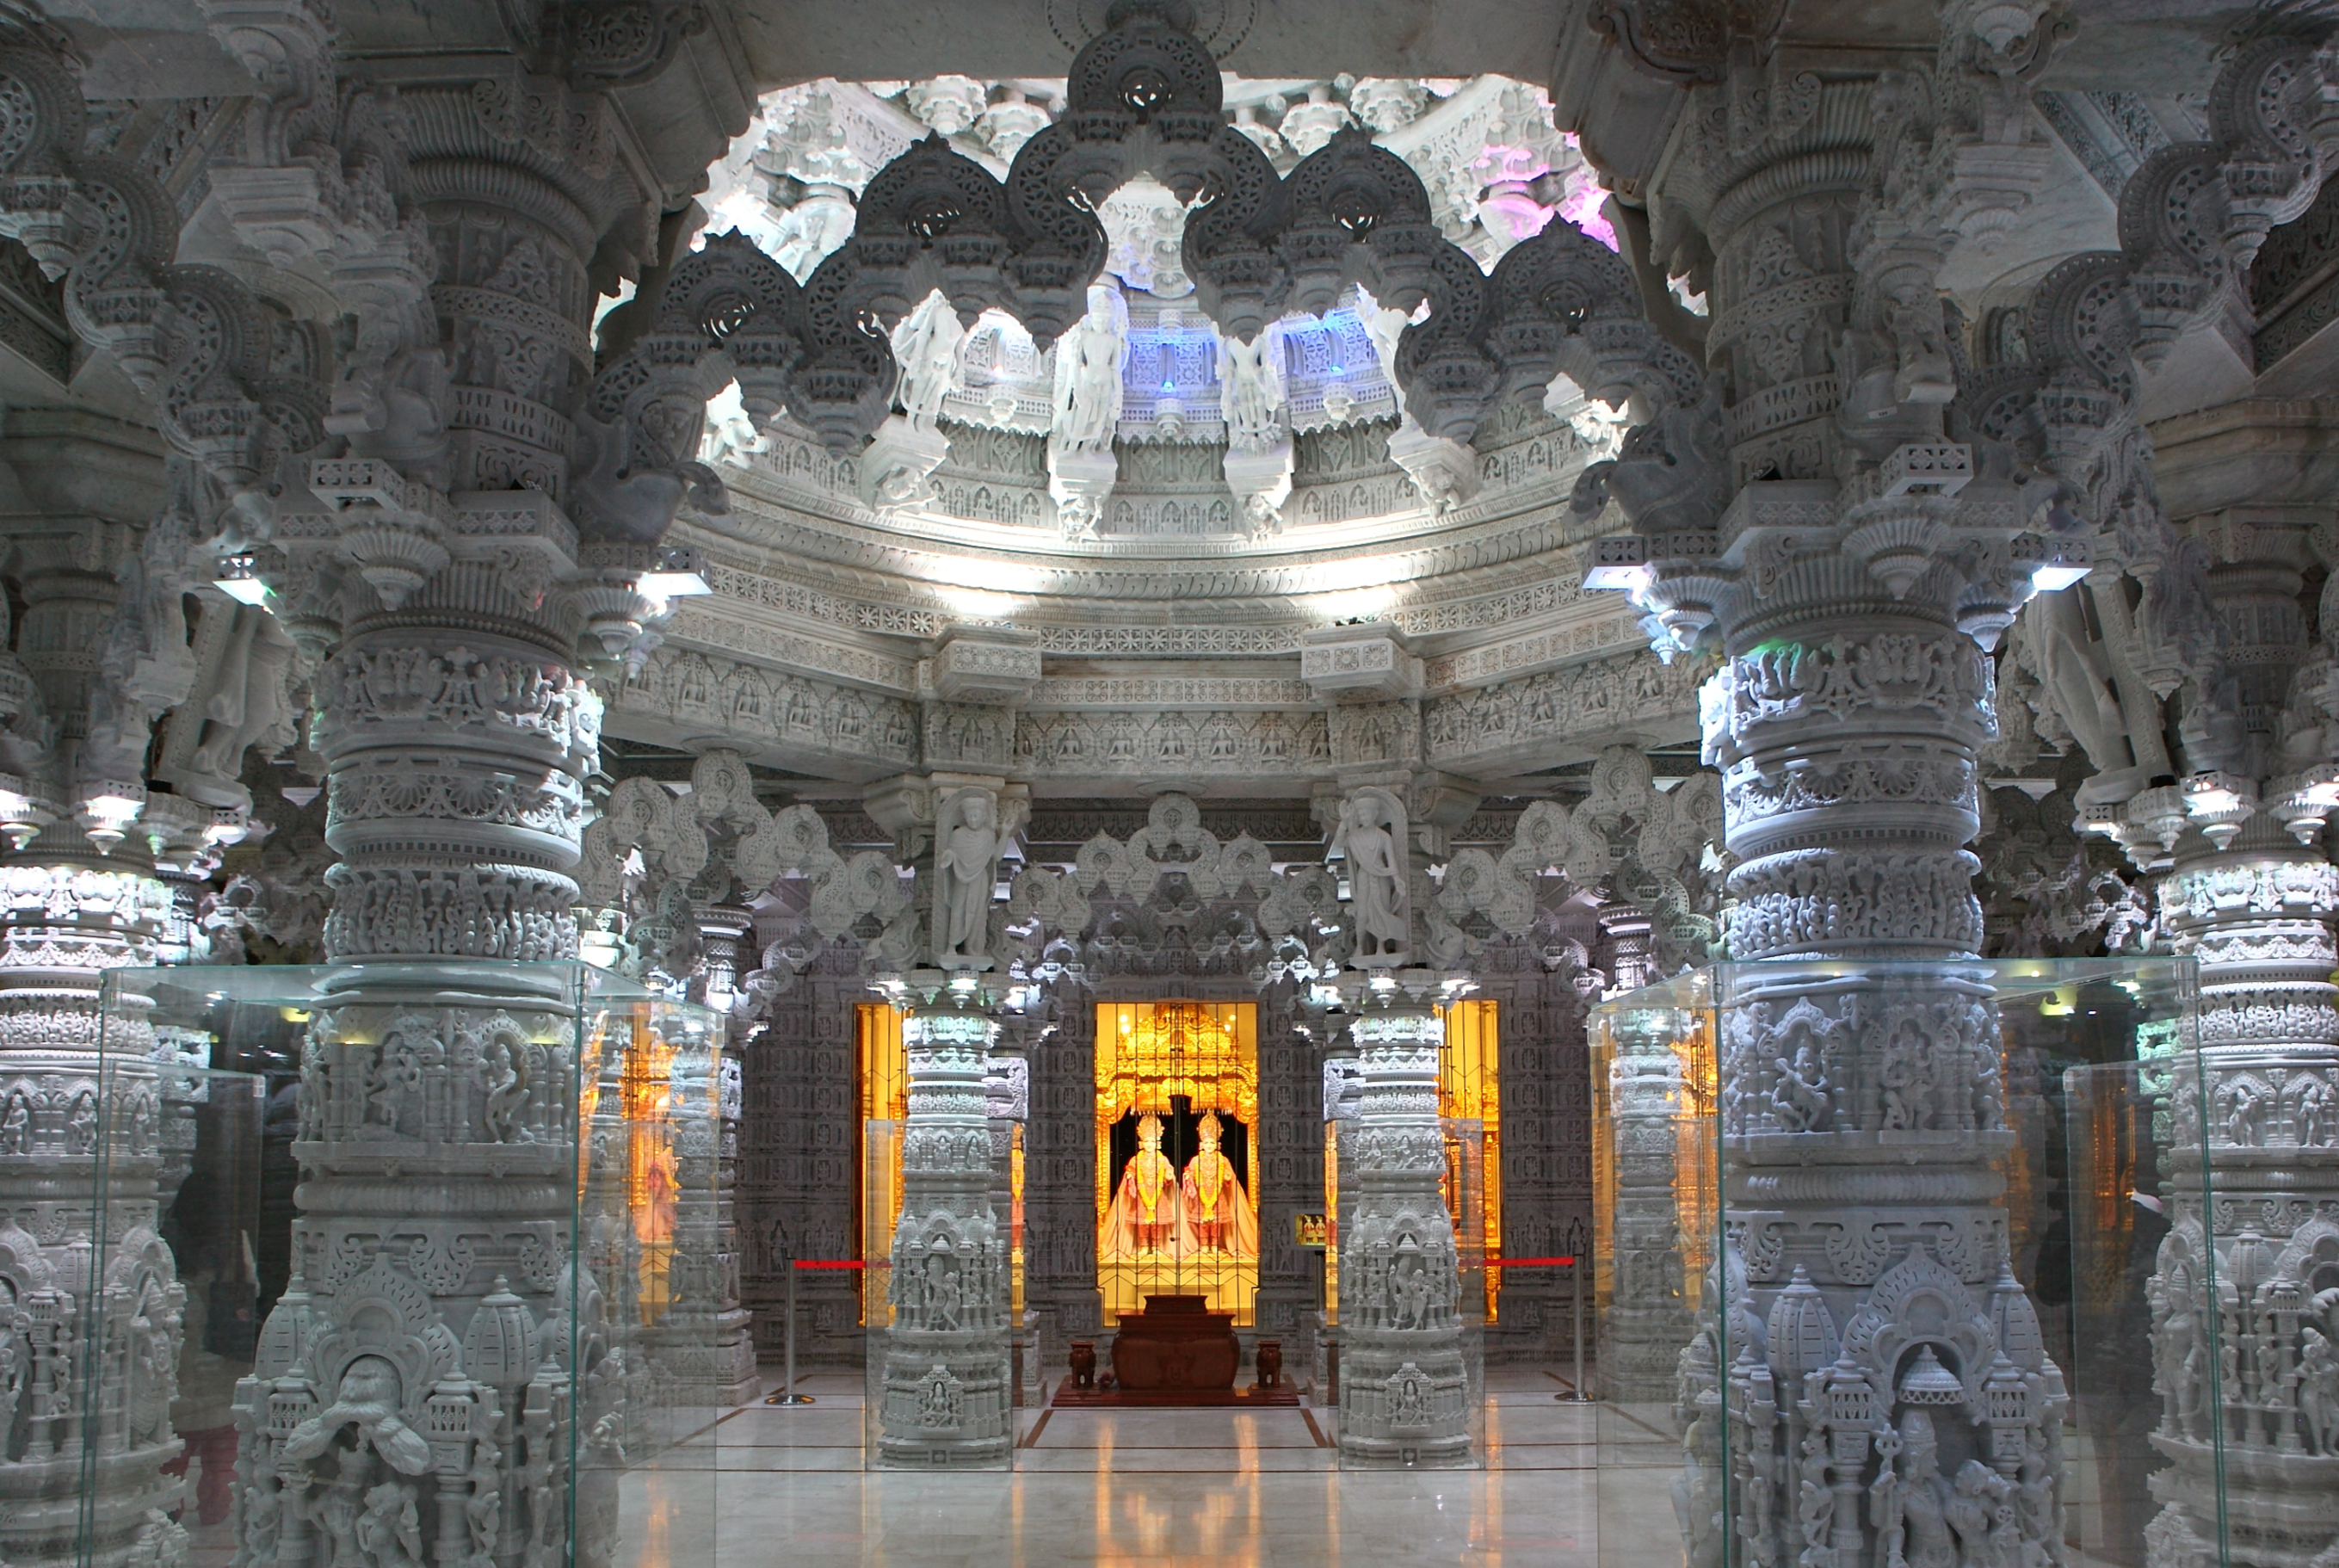 Interior of the BAPS Shri Swaminarayan Mandir in Barlett, IL